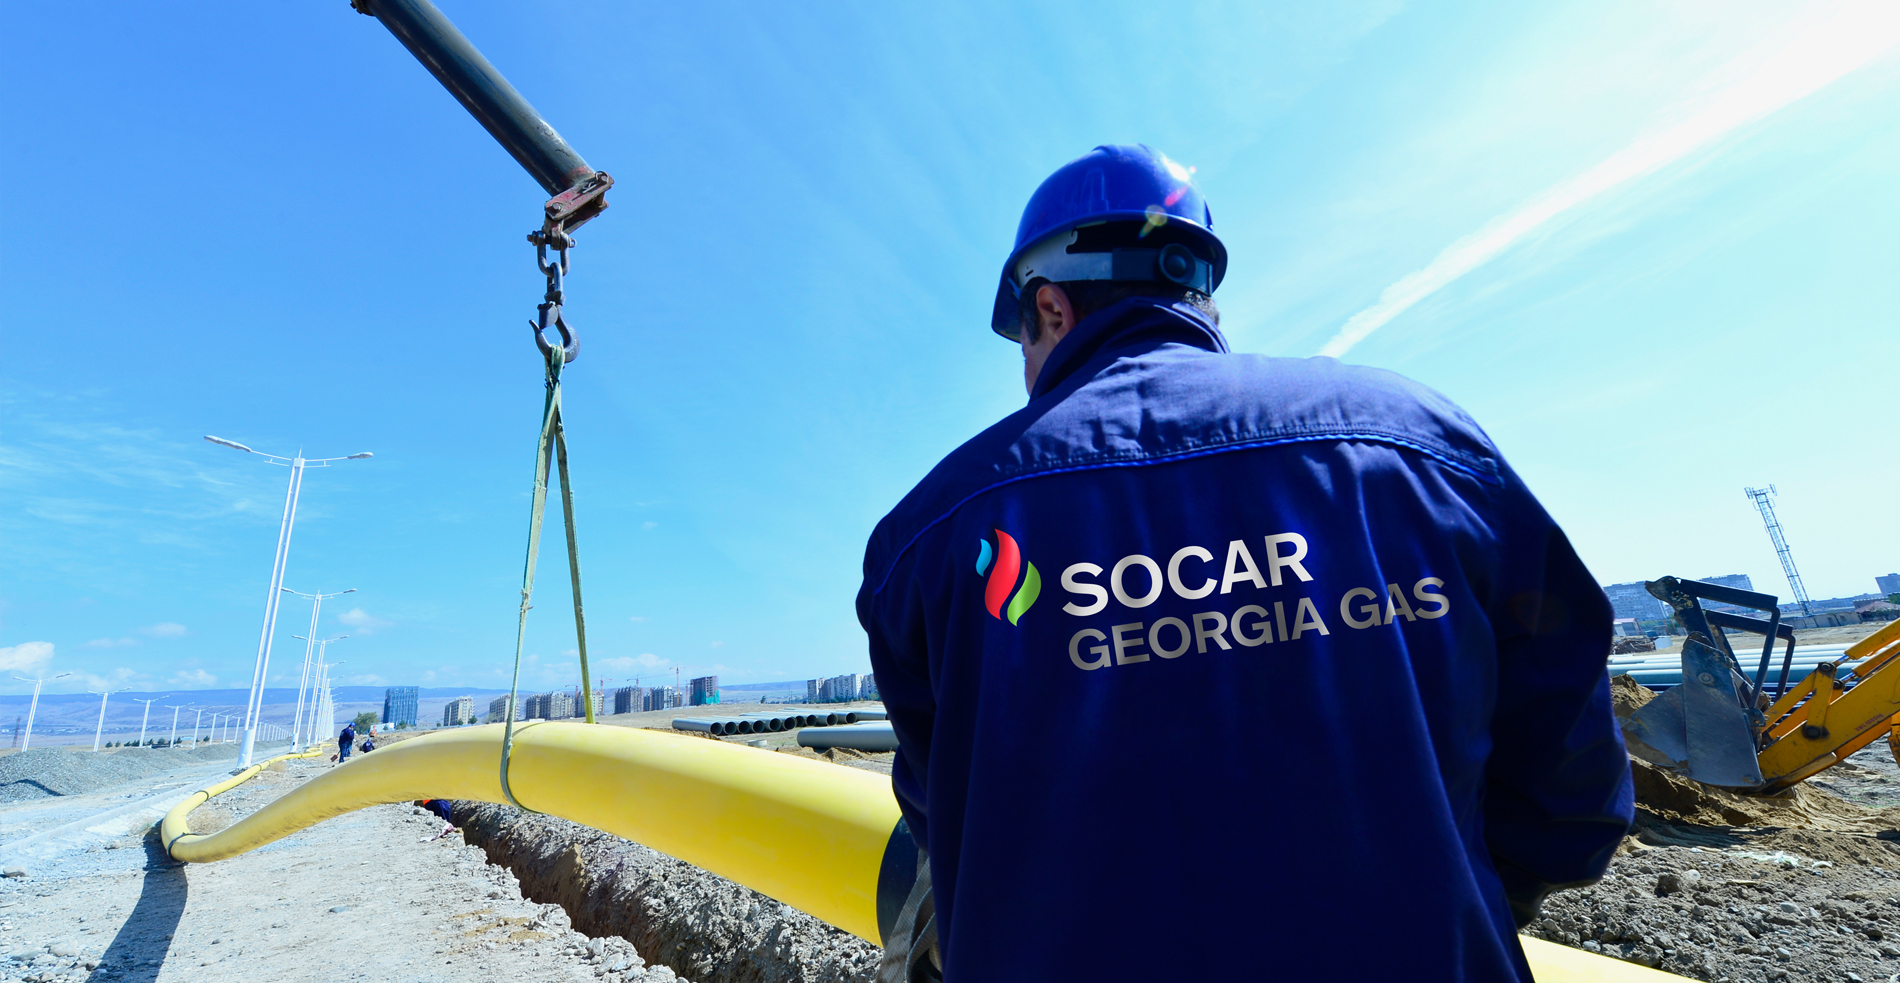 Վրաստանը մոտ 600.000 մ գազամուղ է վաճառել SOCAR-ի դուստր ձեռնարկությանը 9,5 մլն դոլարով